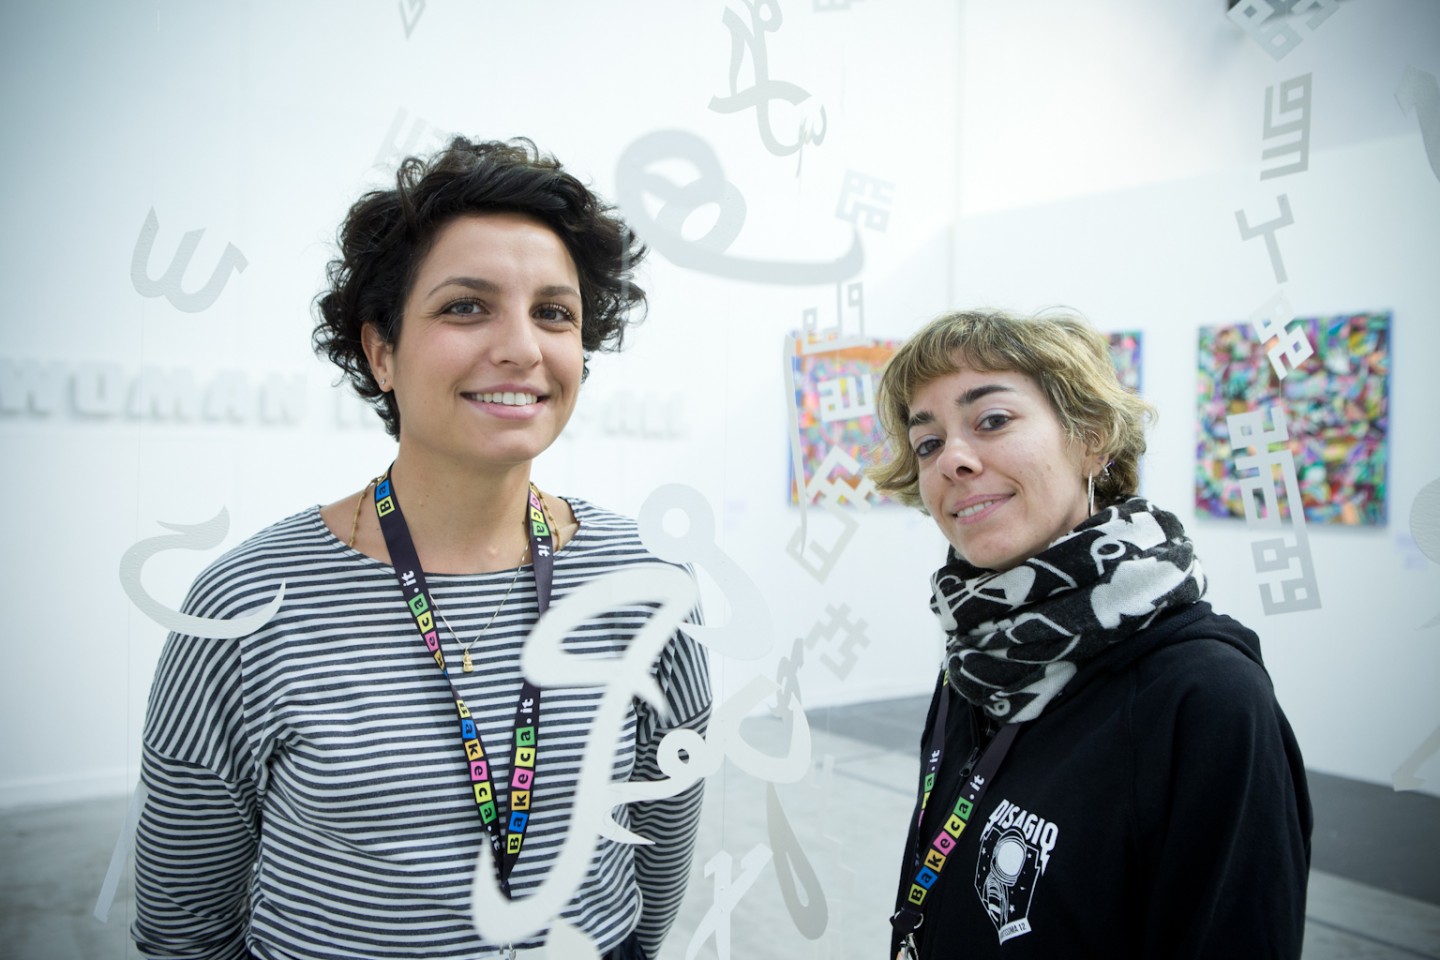 Le curatrice Eleonora Angela Maria Ignazzi e Francesca Pich